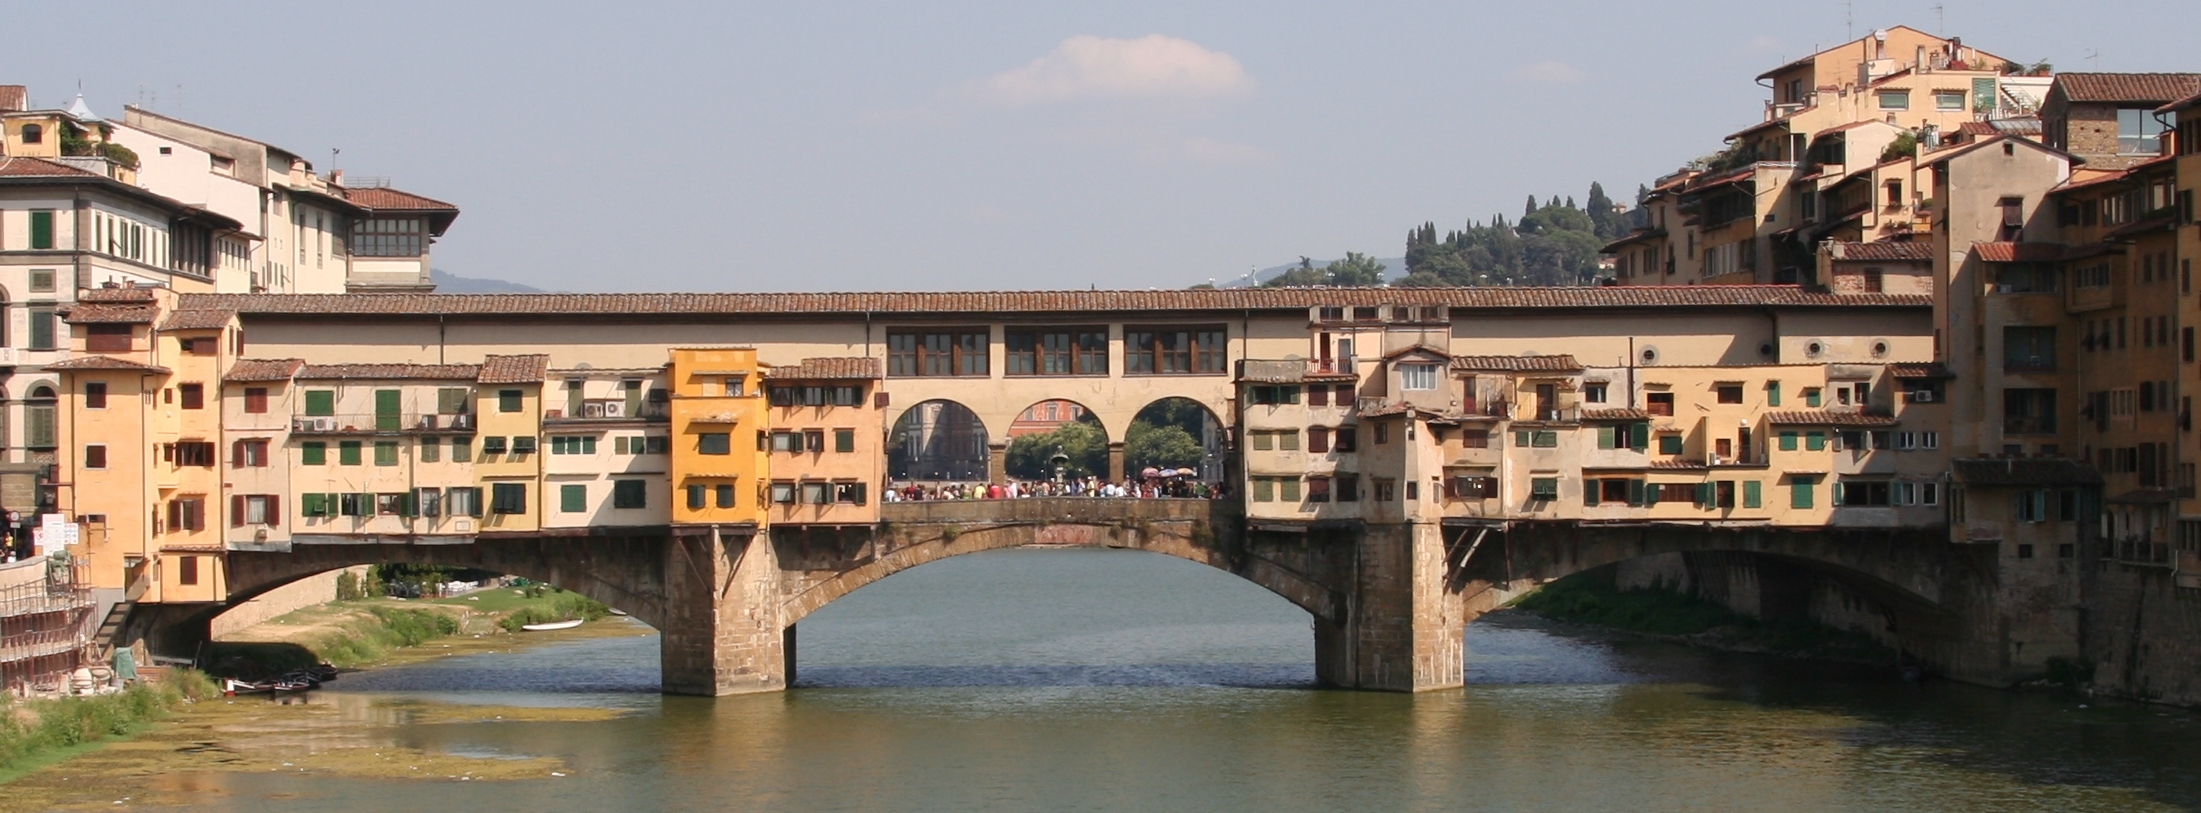 Ponte_Vecchio_visto_dal_ponte_di_Santa_T